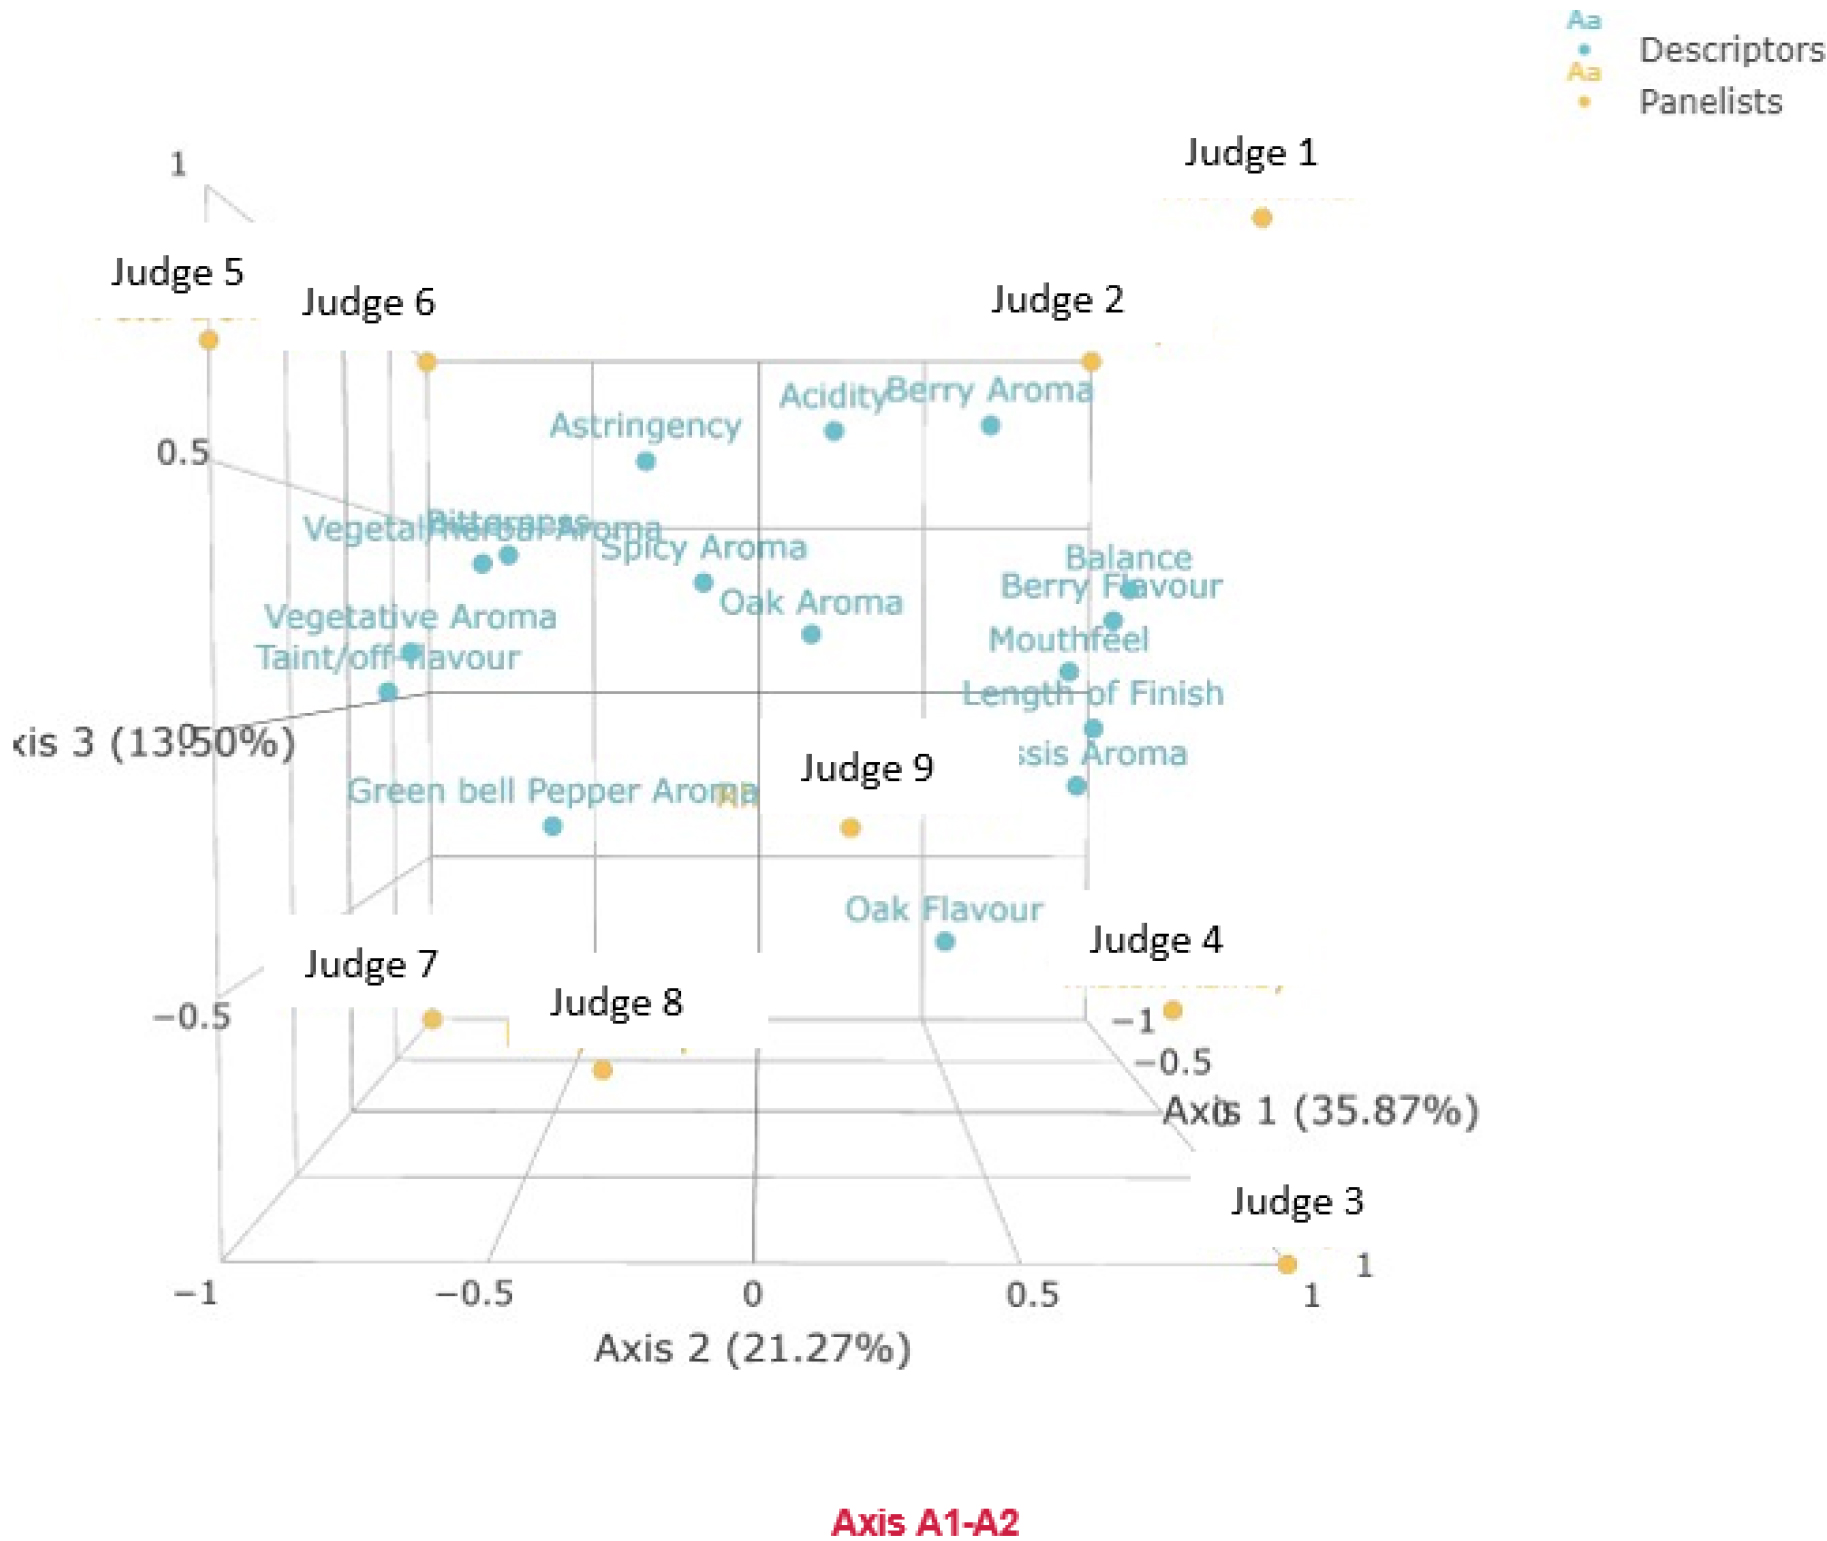 PCA plot showing 16 wine descriptors and 9 judges